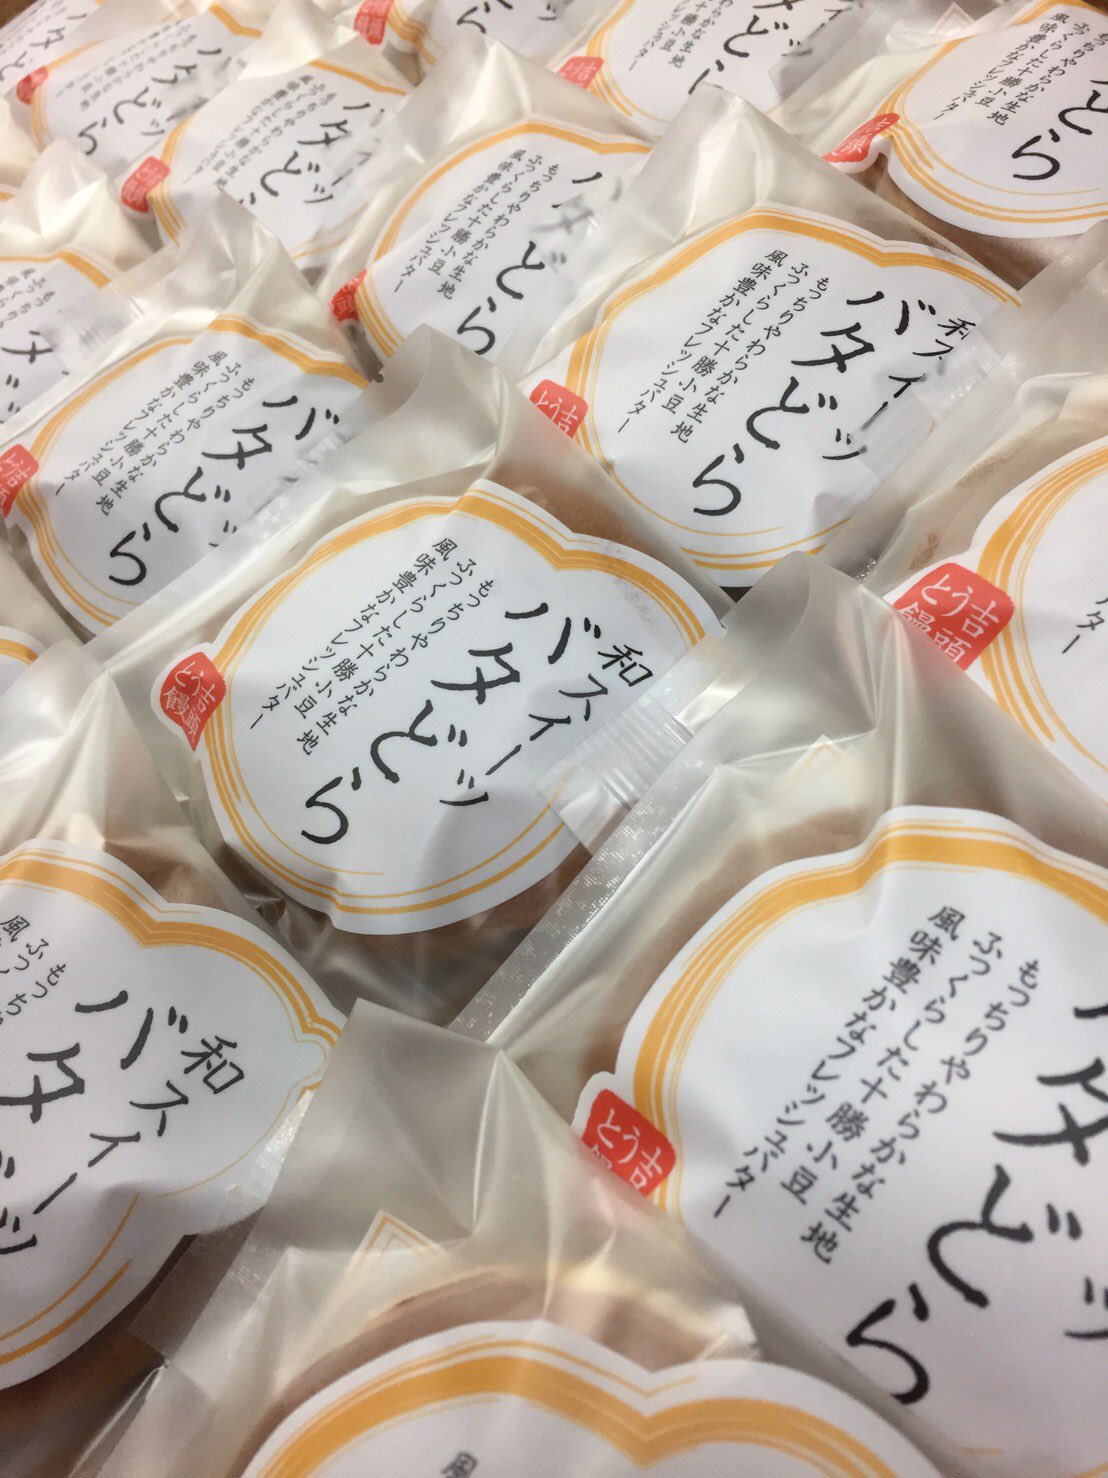 市 饅頭 とう 名古屋 愛知 吉 県 名古屋にある老舗和菓子店の味をお気軽にお取り寄せ